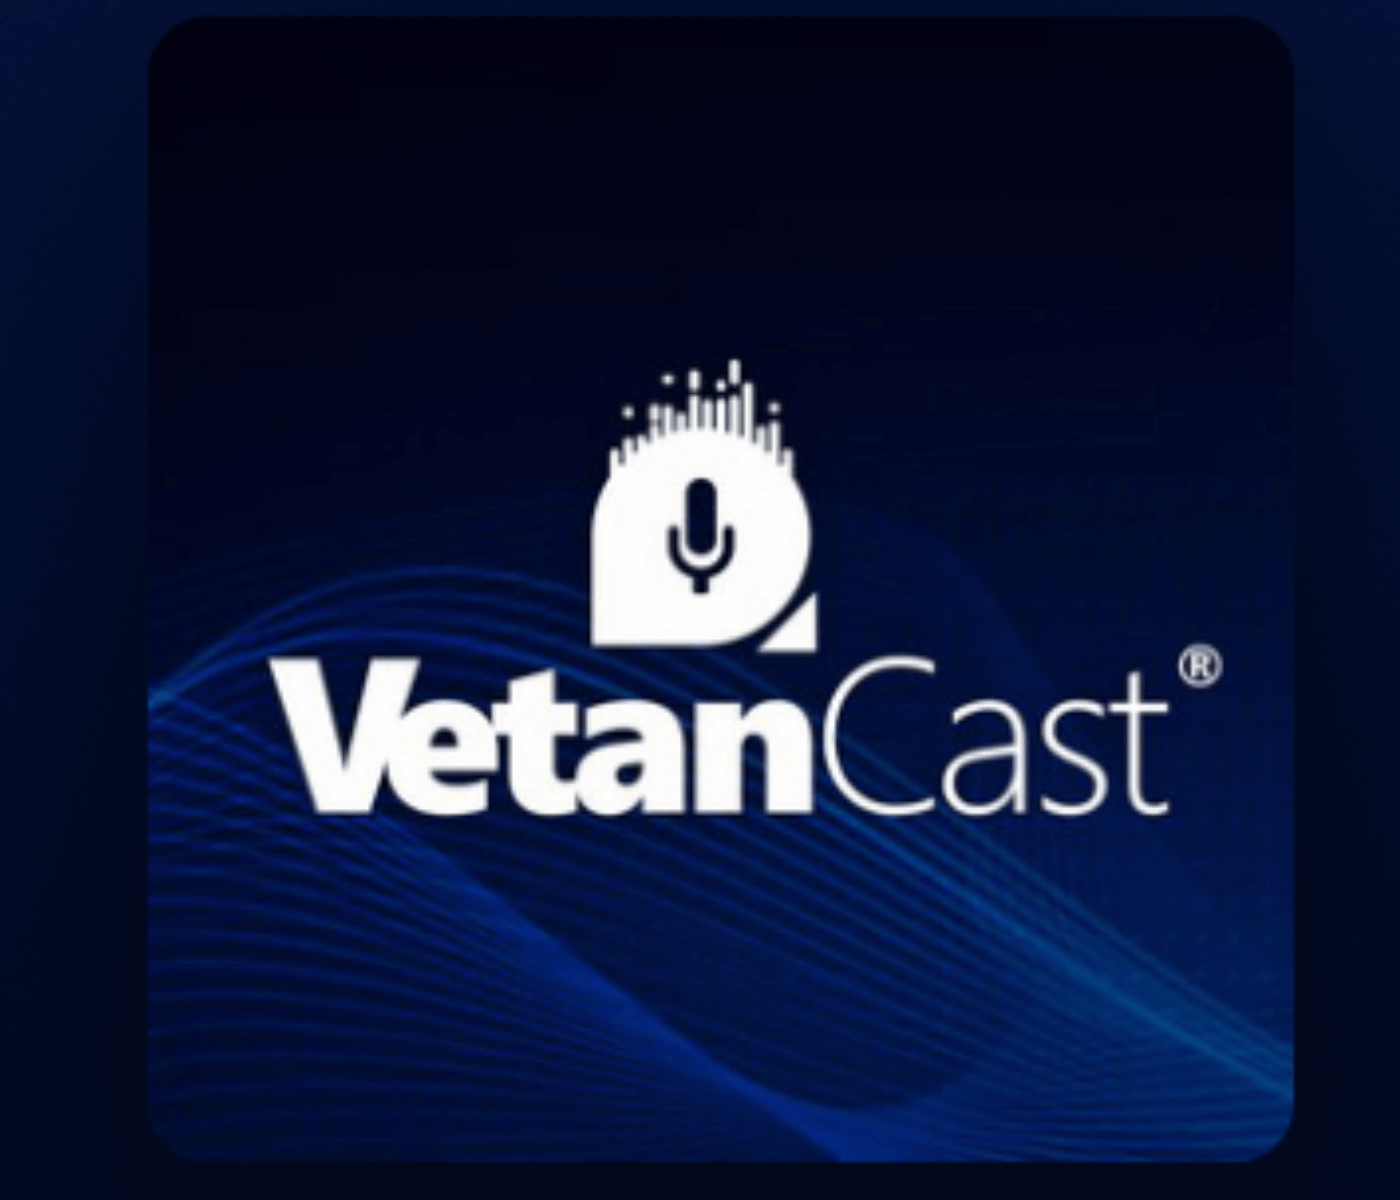 VetanCast chega ao episódio 50 e traz entrevista especial com o vice-presidente da Vetanco